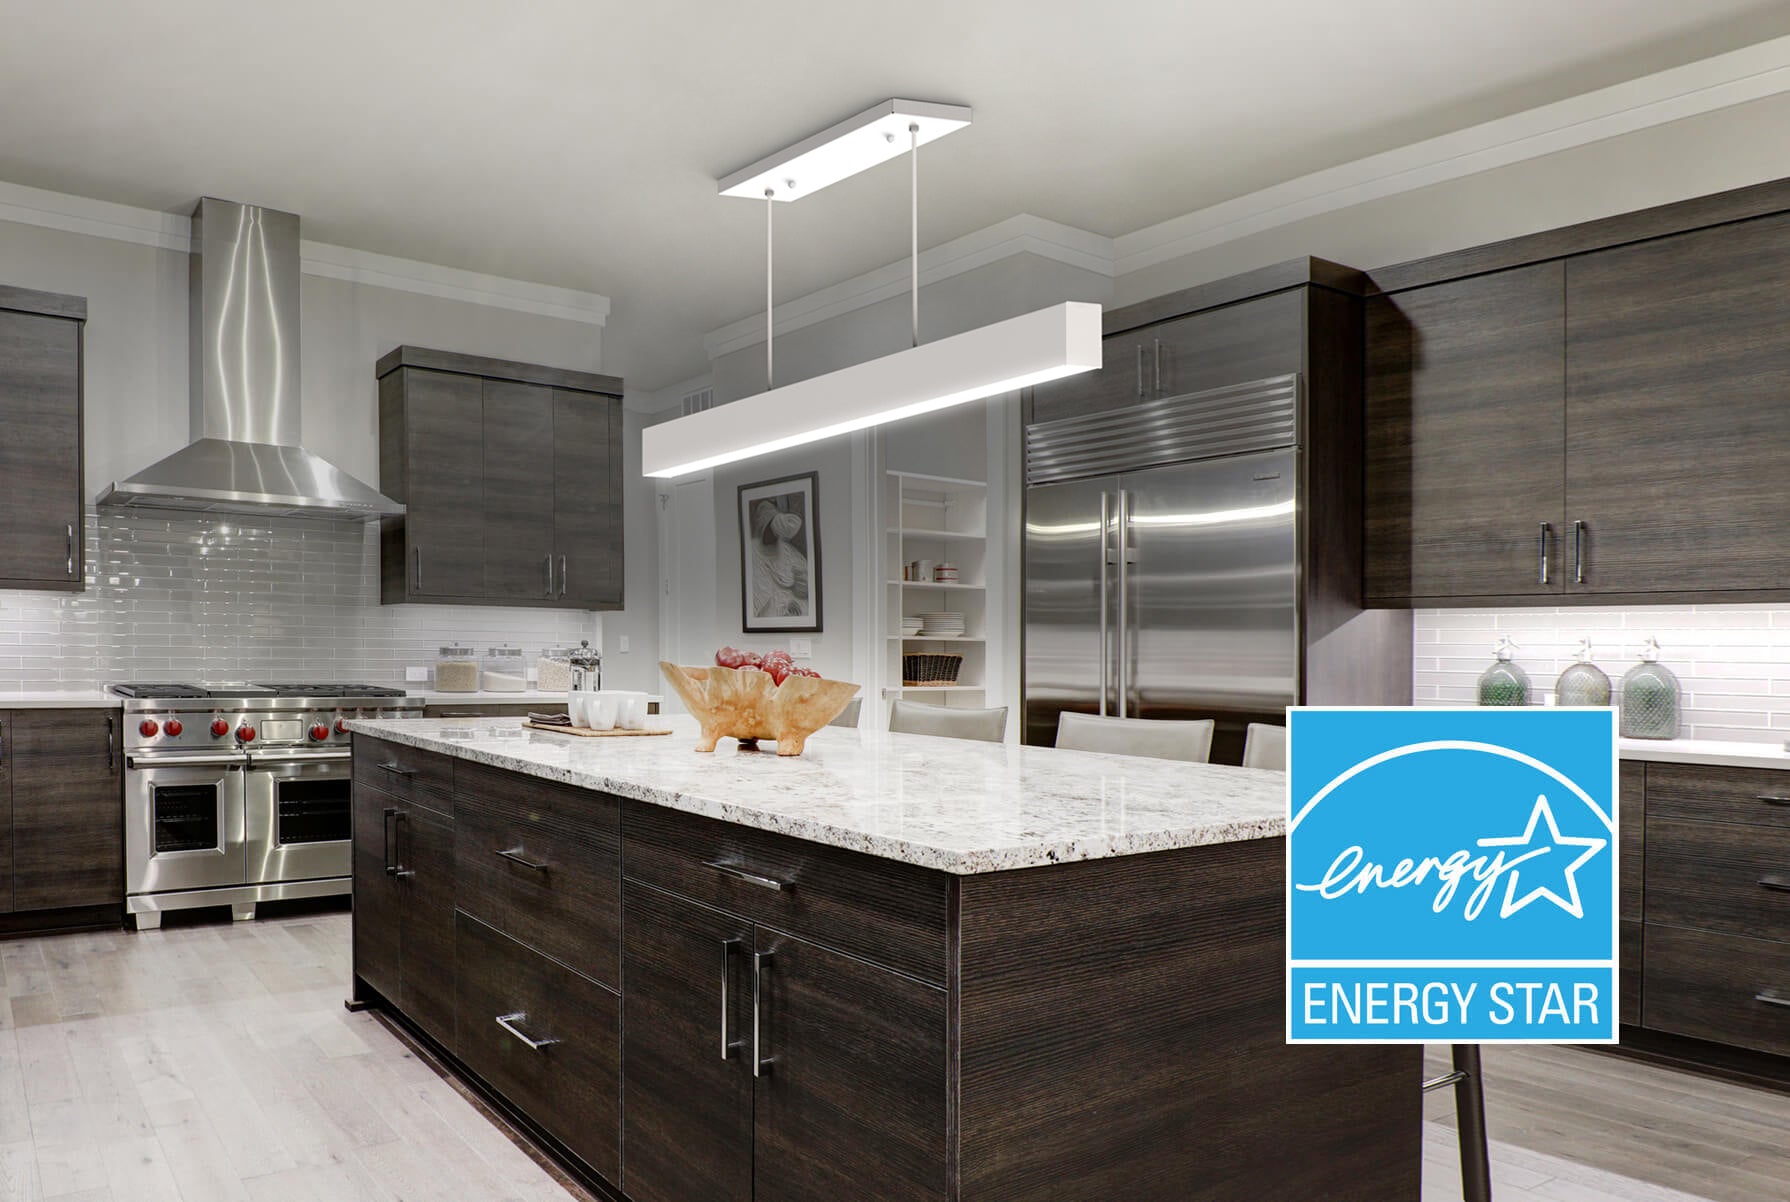 KODA Modern Linear LED Light - Sleek Home Lighting Solution